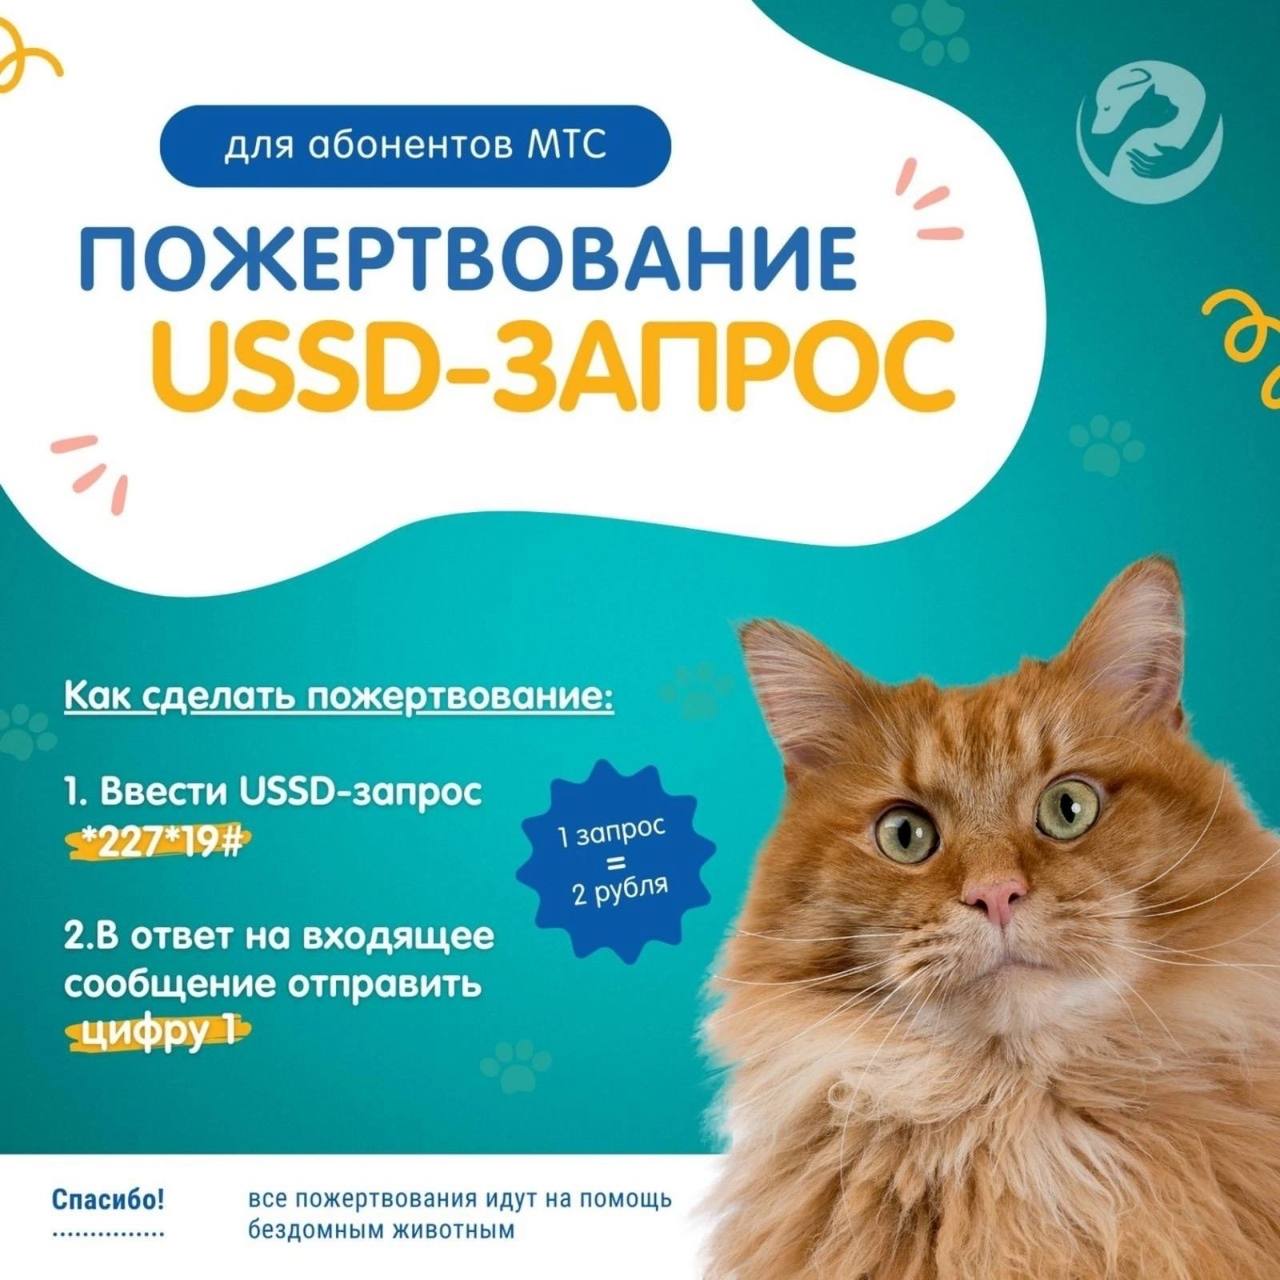 Всего 2 рубля, и вы поможете бездомным животным в Гродно. Рассказываем, как легко это сделать